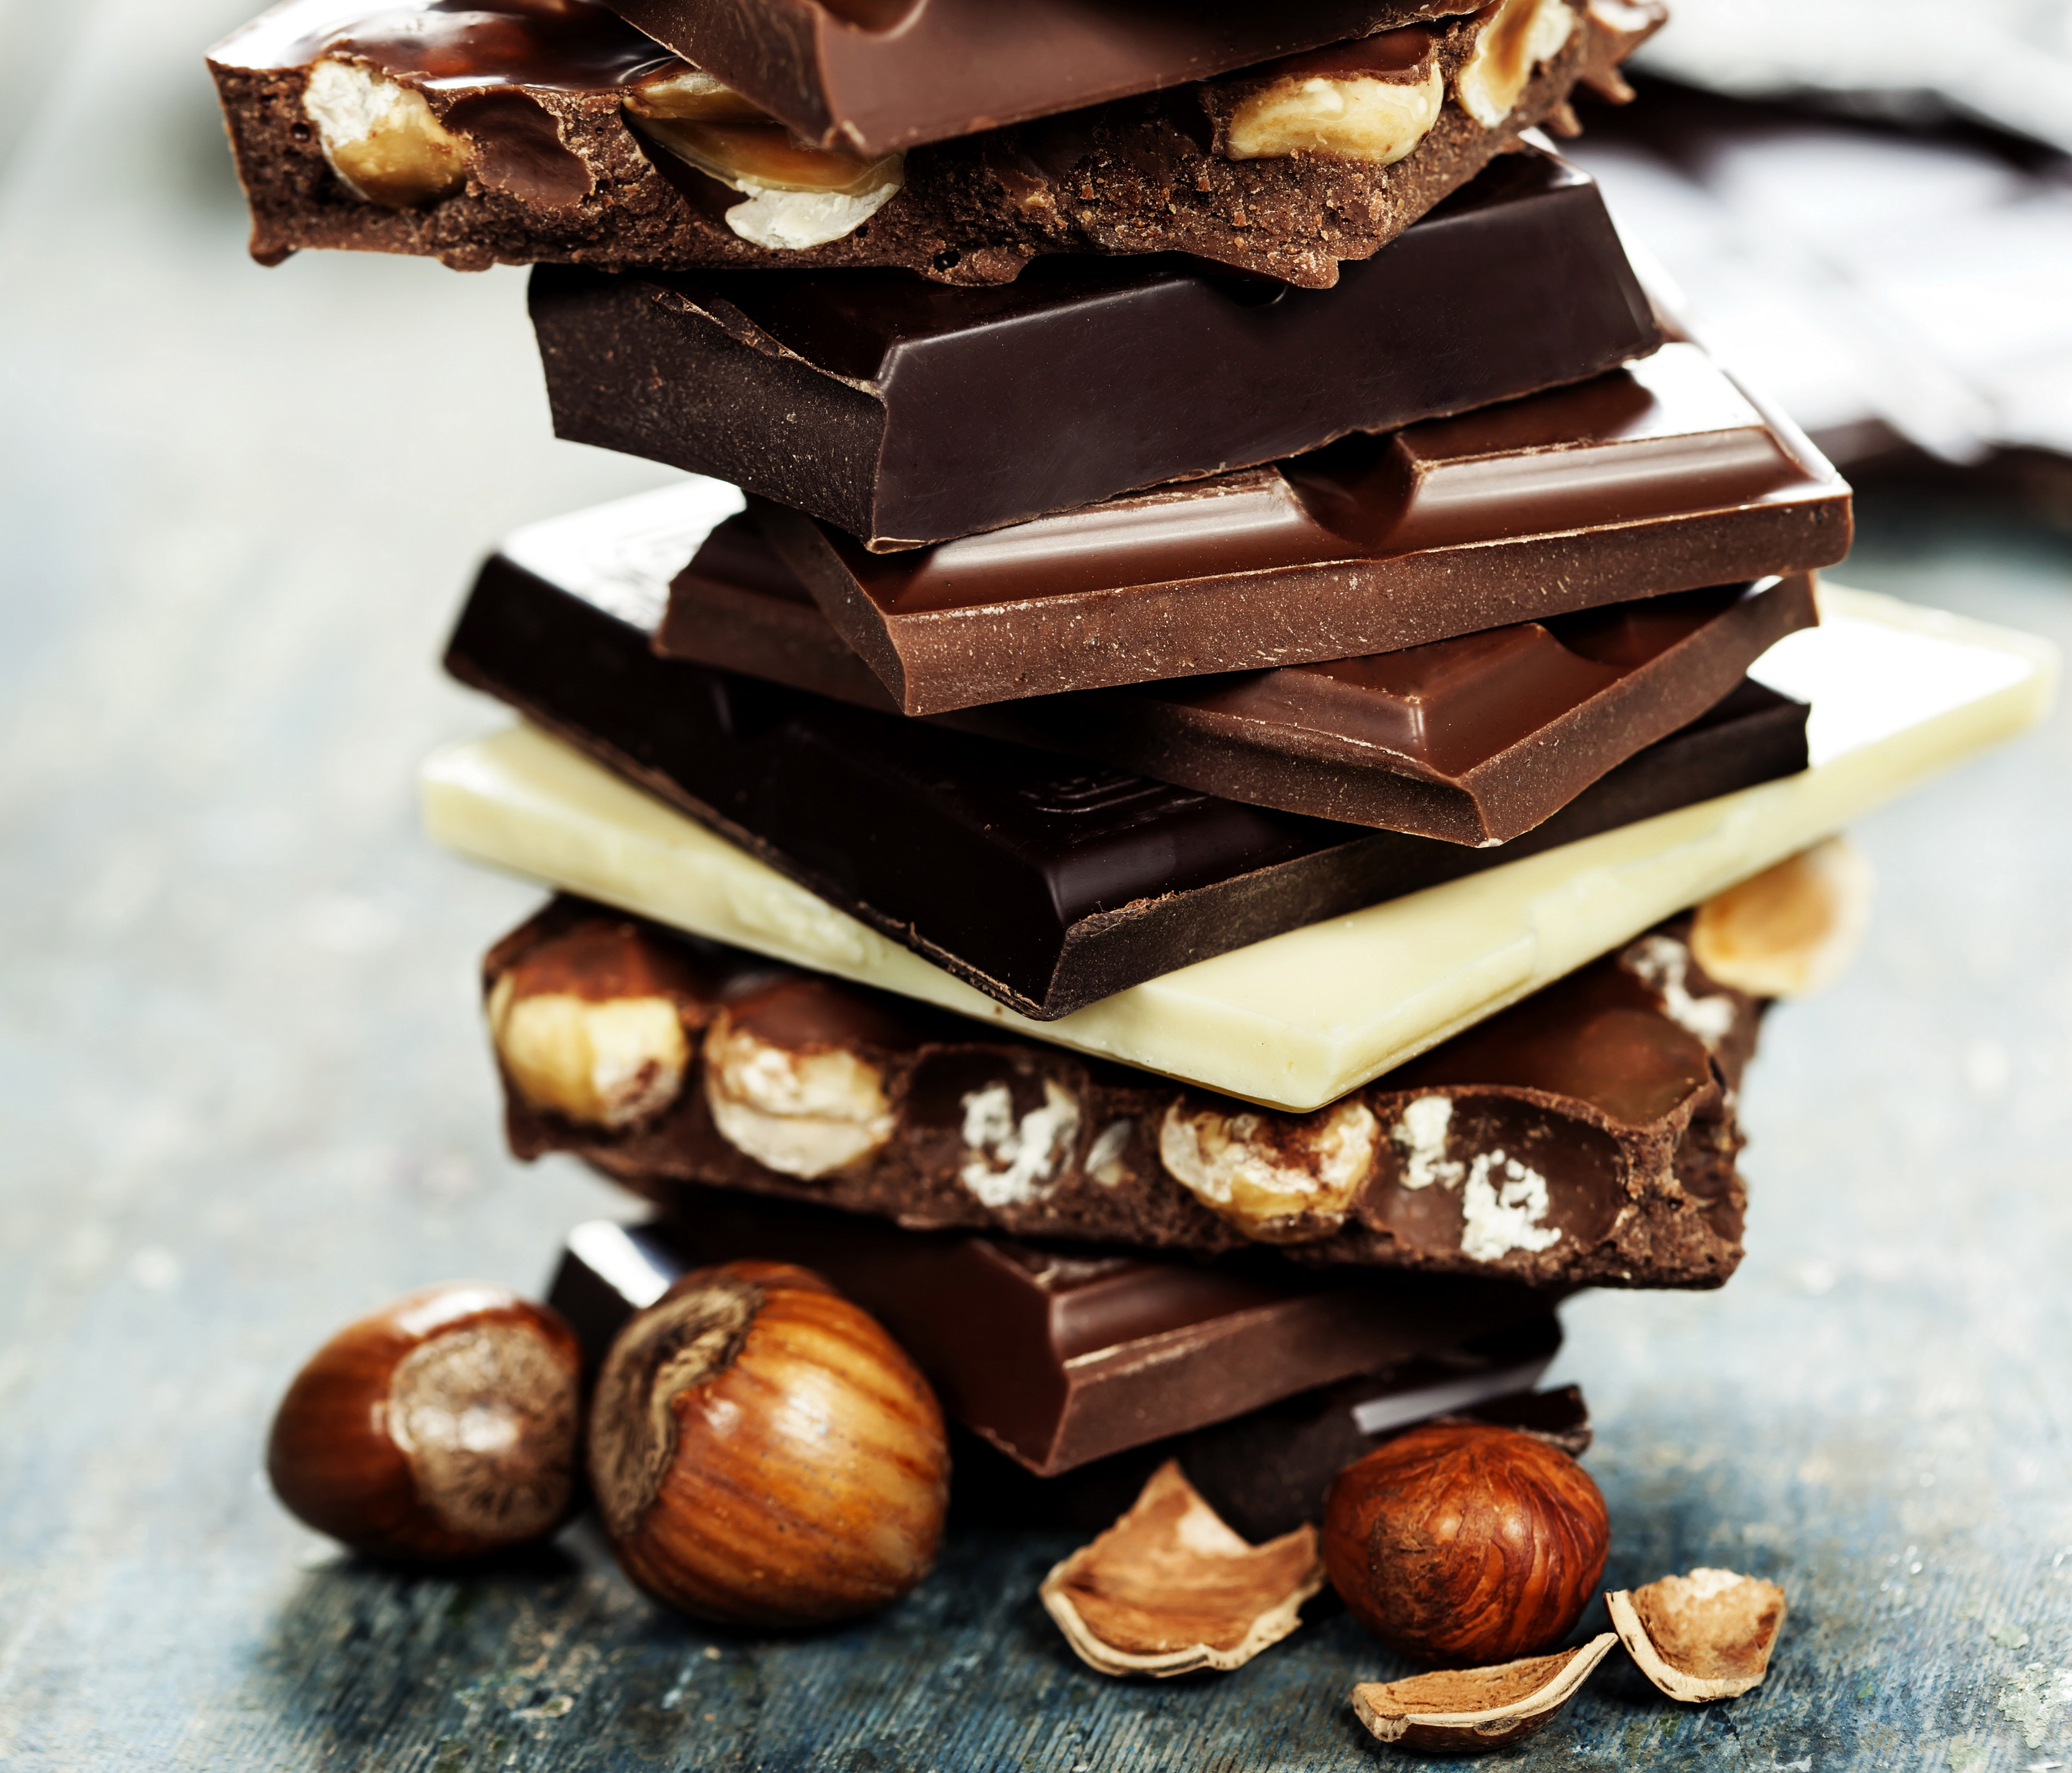 Покажи картинку шоколада. Шоколад с орехами. Шоколадка с орехами. Шоколадка с орешками. Разные шоколадки.